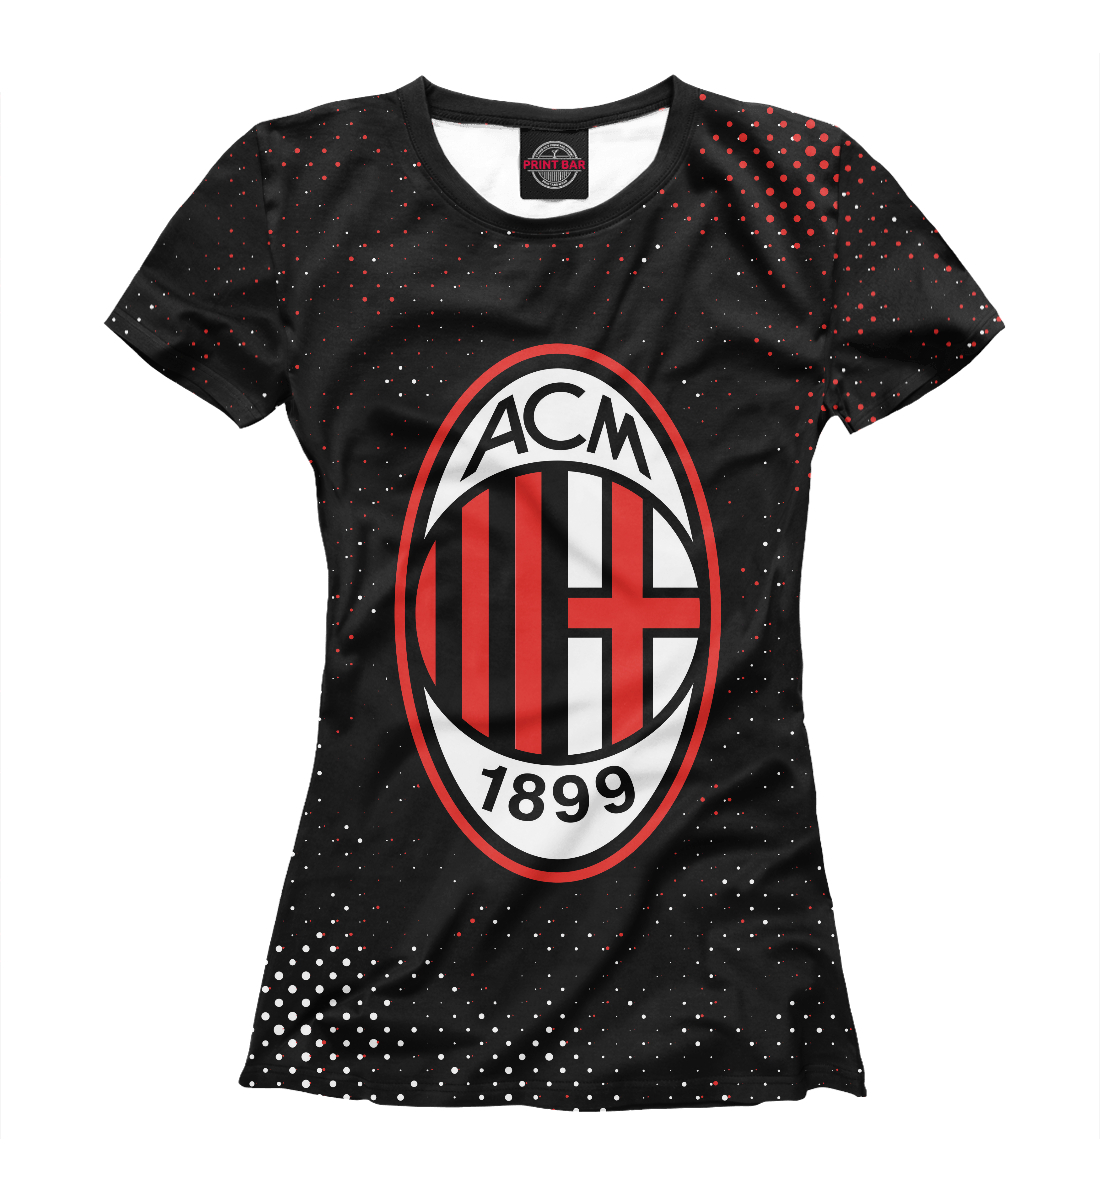 Футболка AC Milan / Милан для женщин, артикул: ACM-978207-fut-1mp